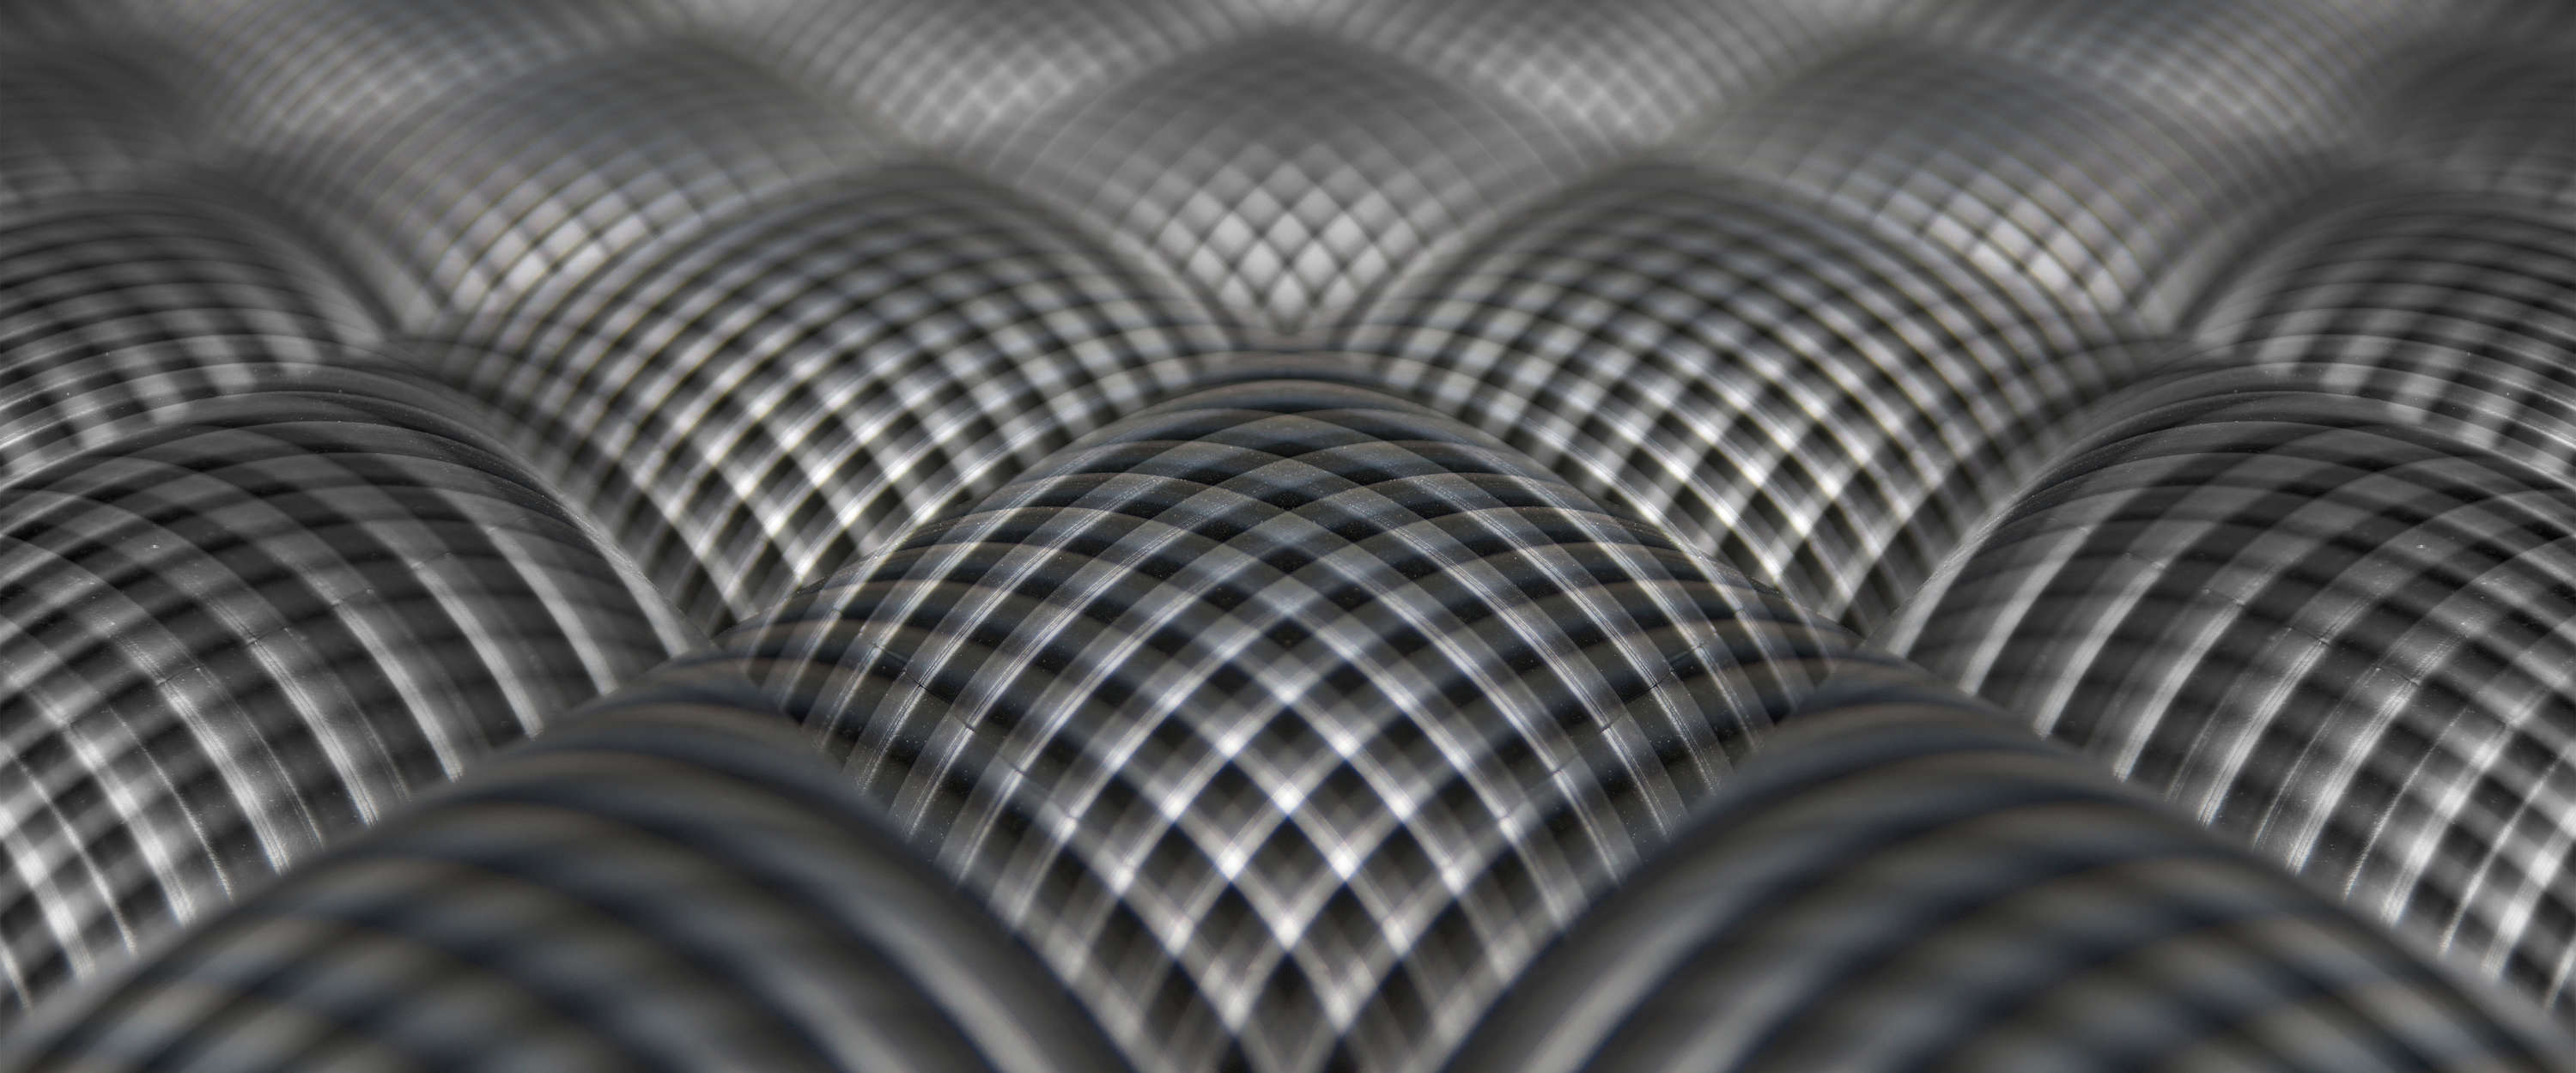             Fototapete Industrial Design mit 3D Wellen-Muster
        